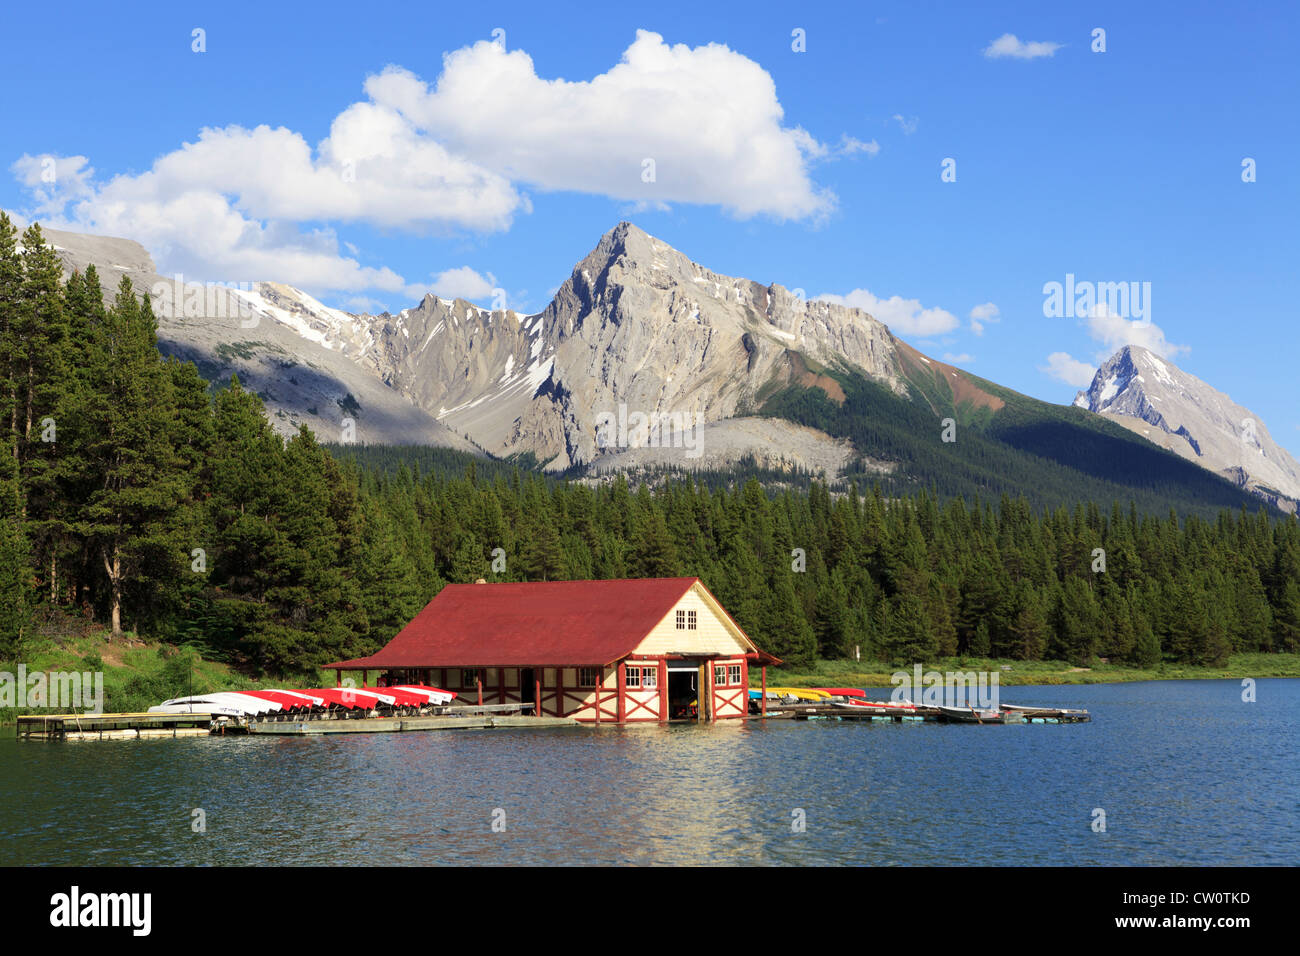 Casa in barca su un lago di montagna in Canada Foto Stock